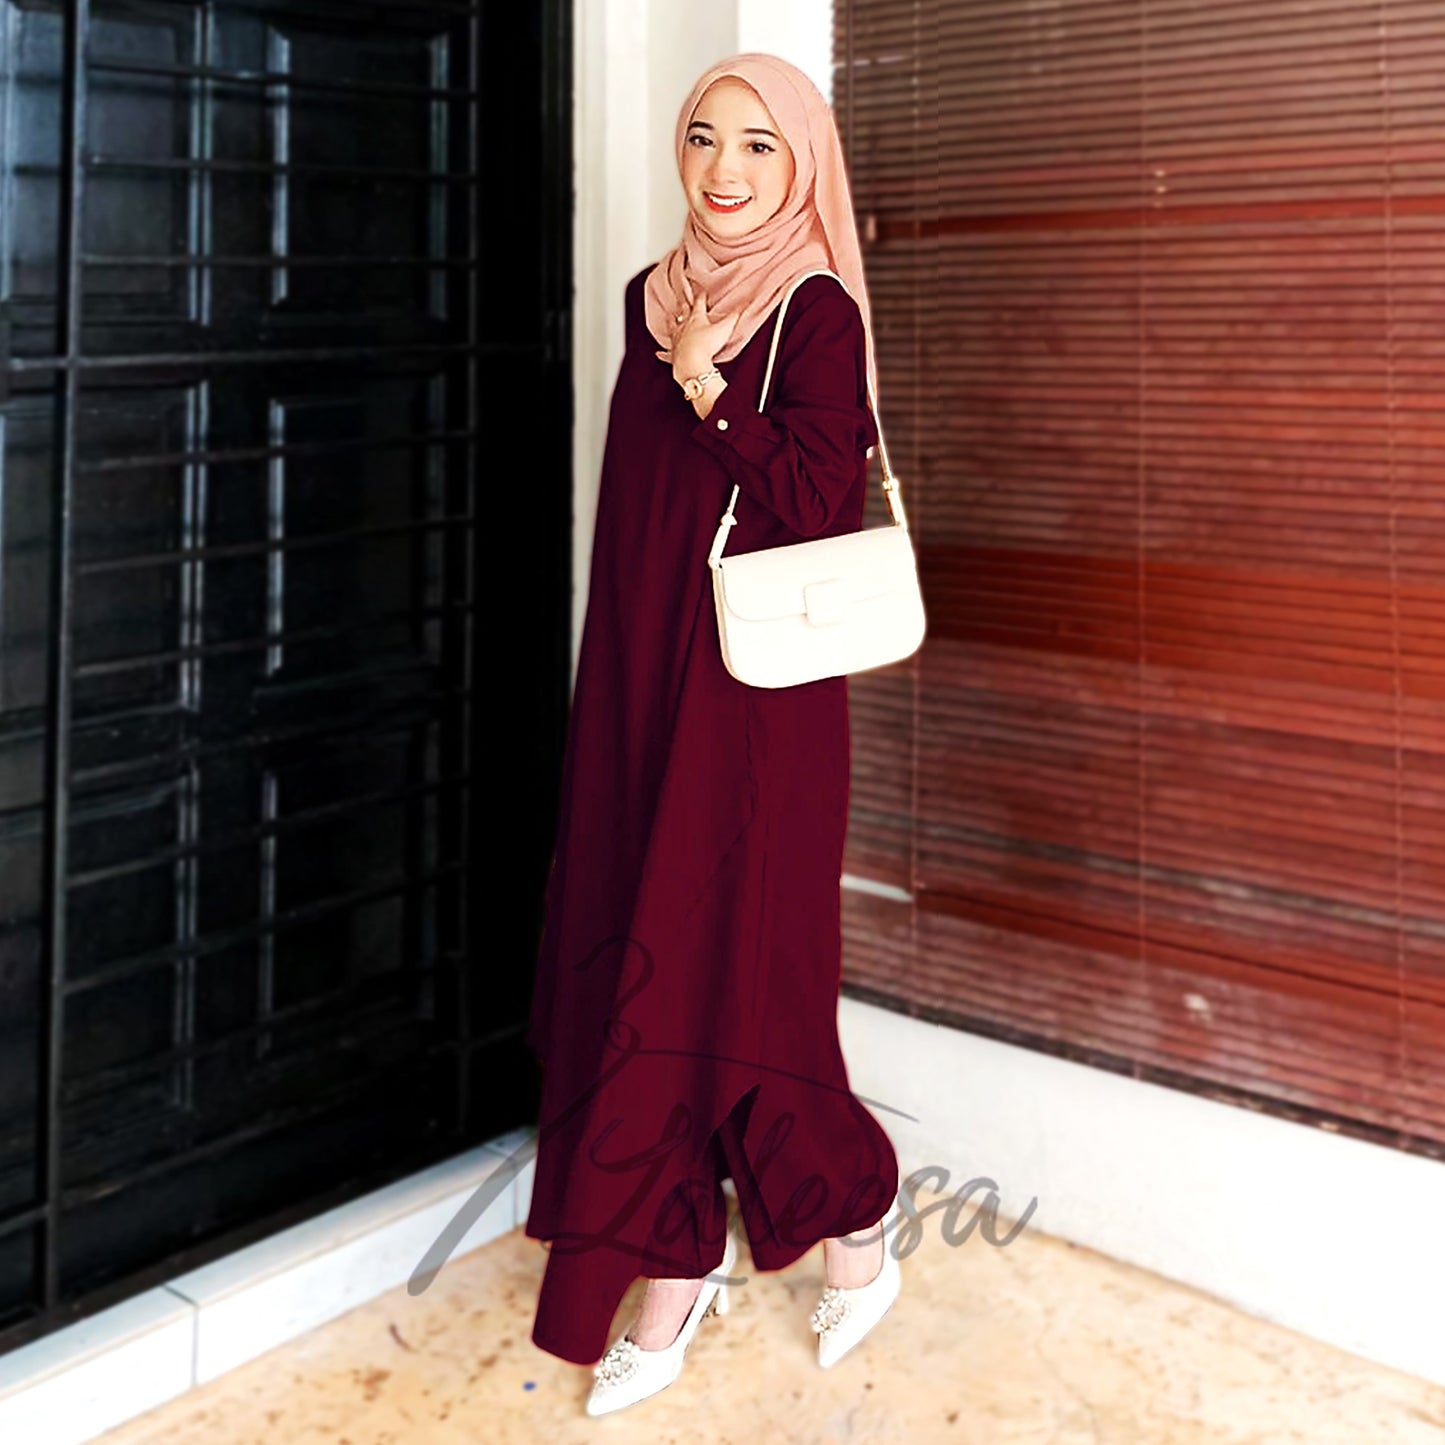 LALEESA (Blouse + Pants) SET FARHANA SW839839 Set Wear Blouse Muslimah Blouse Women Blouse Plus Size Baju Raya 2024